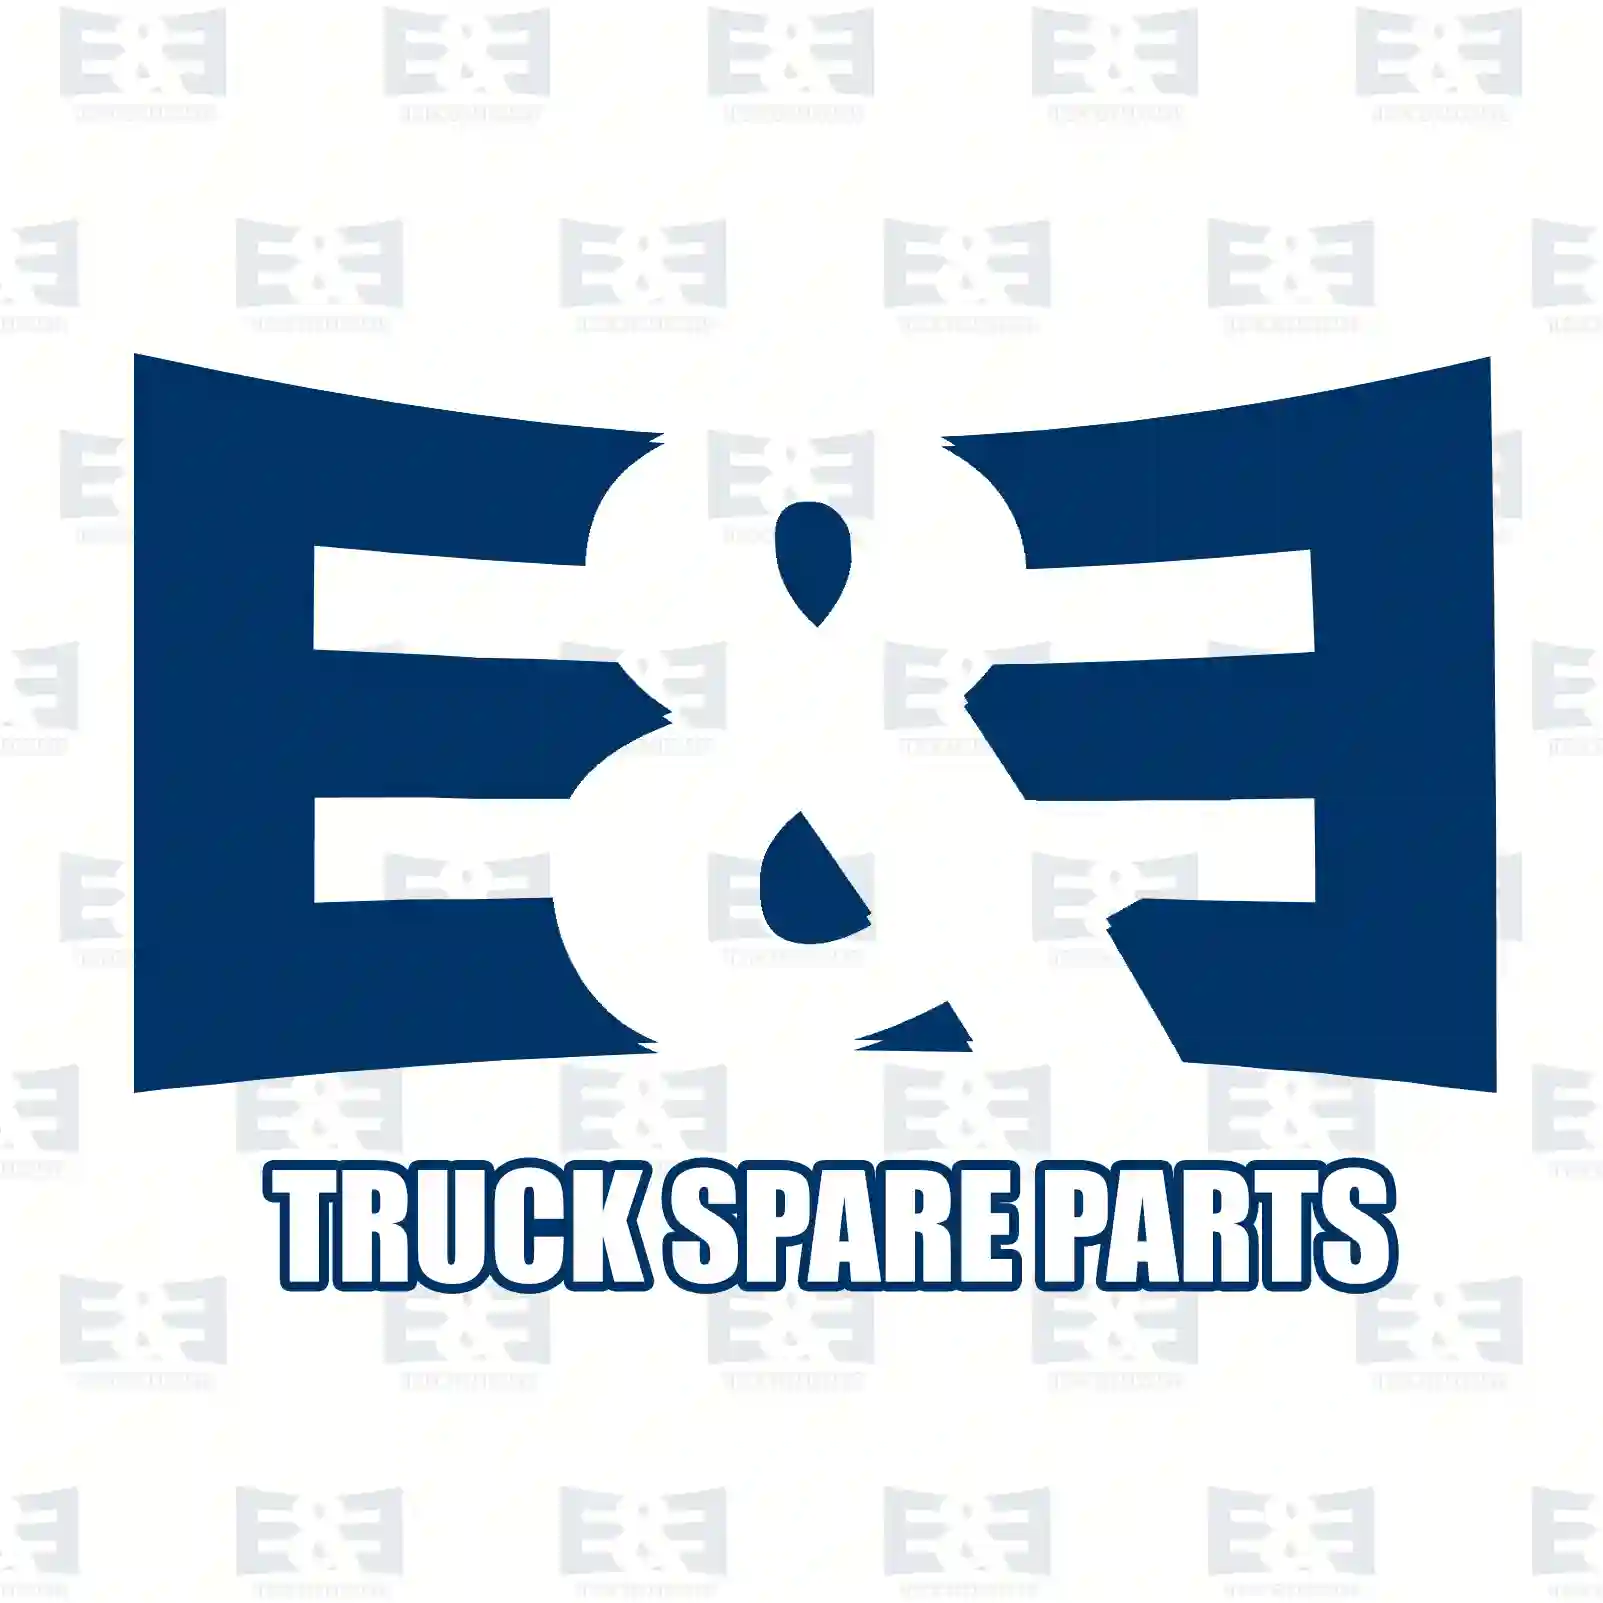 King pin kit, double kit, 2E2270465, 0683470, 683470, , ||  2E2270465 E&E Truck Spare Parts | Truck Spare Parts, Auotomotive Spare Parts King pin kit, double kit, 2E2270465, 0683470, 683470, , ||  2E2270465 E&E Truck Spare Parts | Truck Spare Parts, Auotomotive Spare Parts